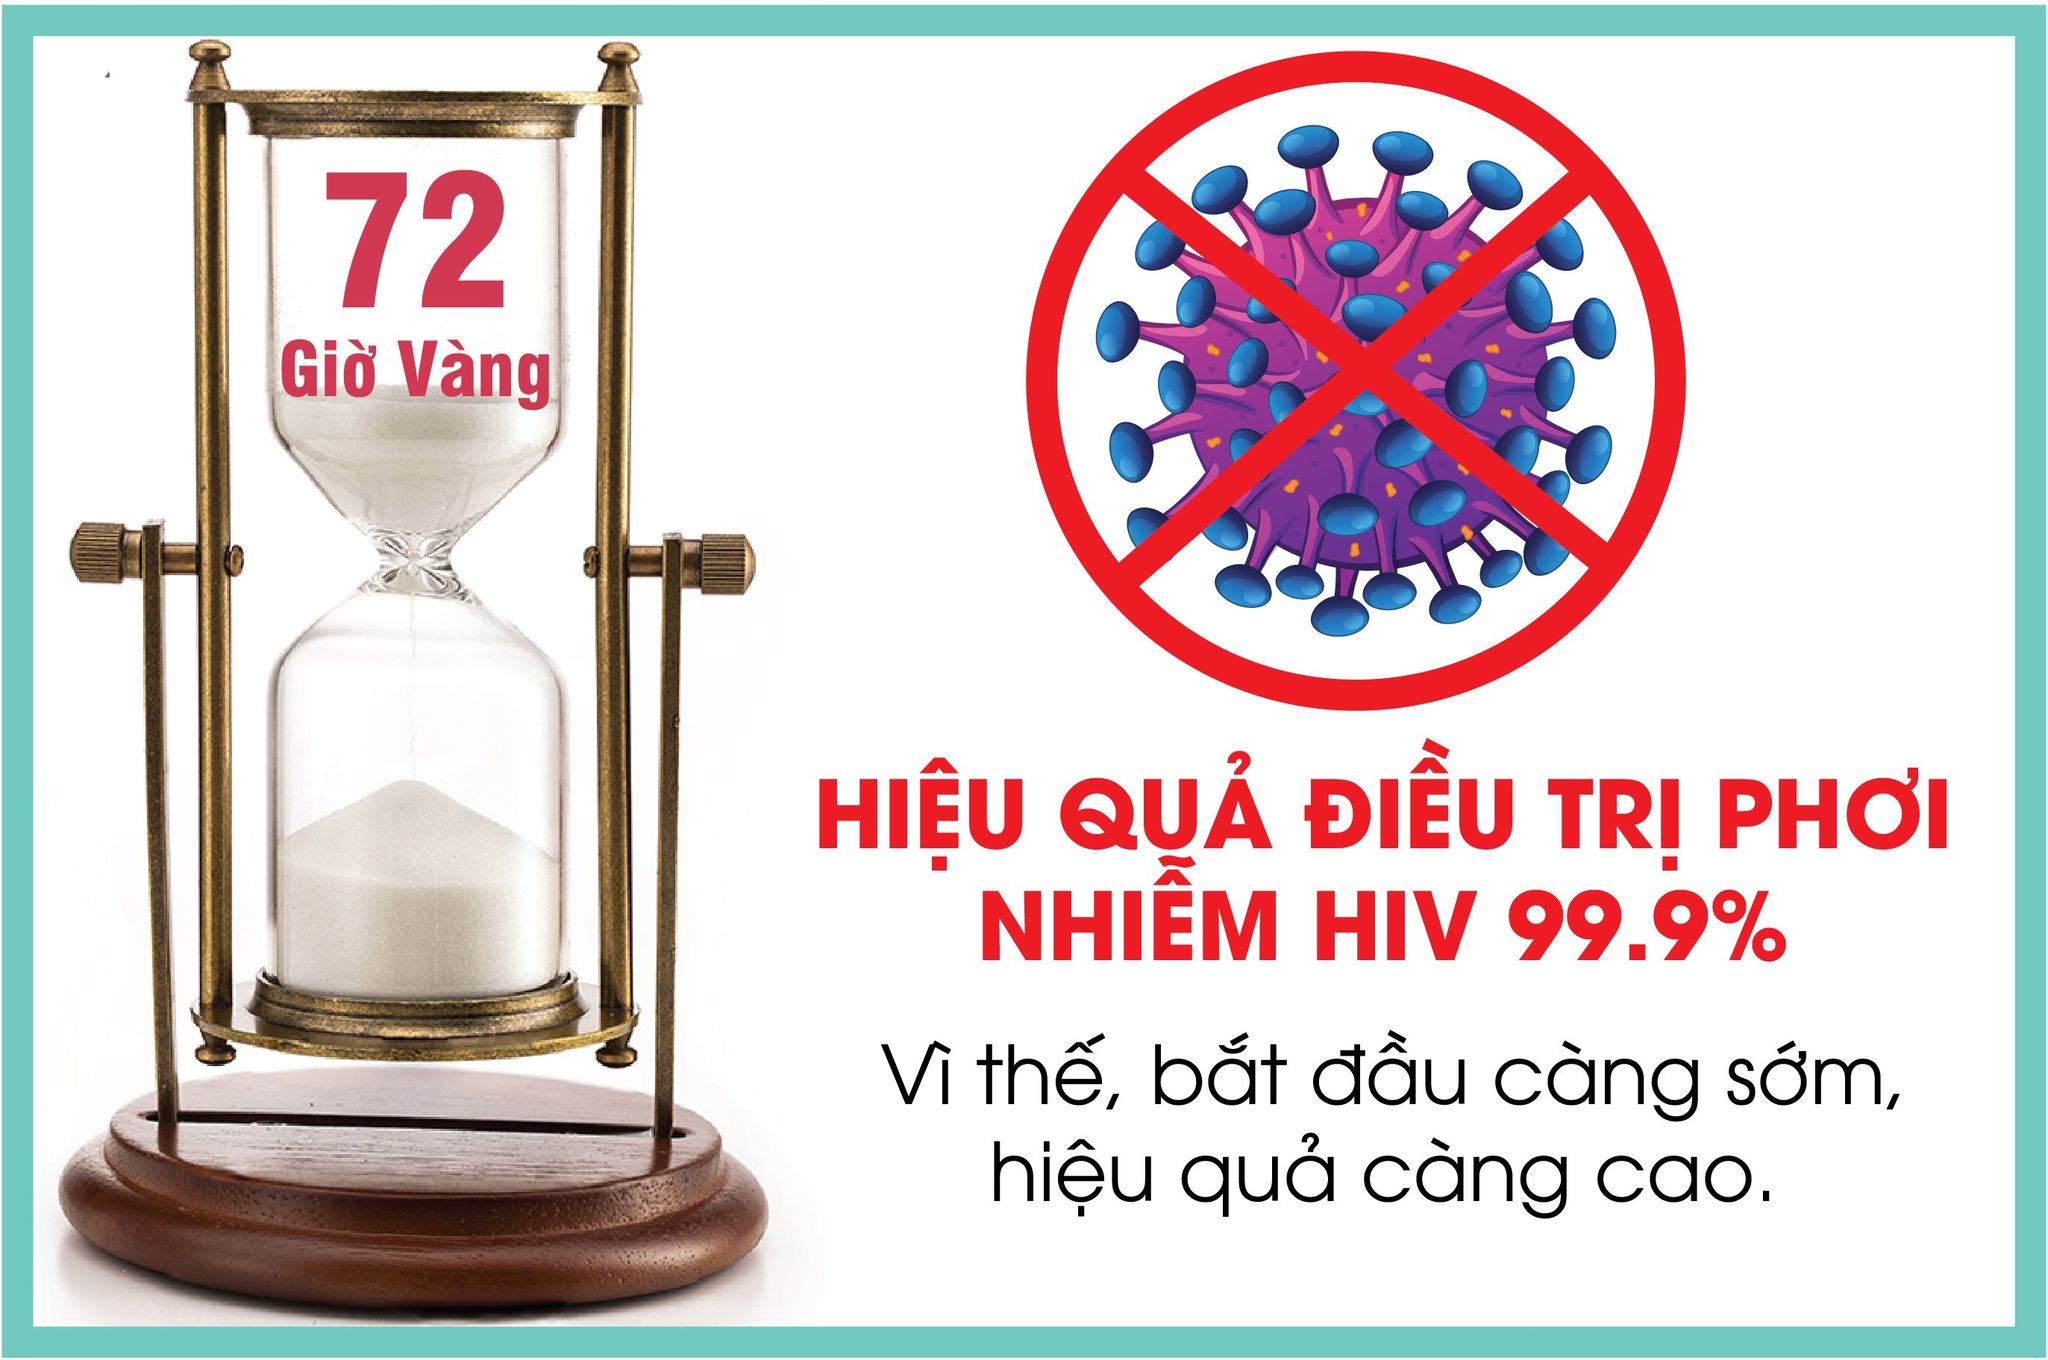 Phơi nhiễm HIV là gì và cách phòng tránh